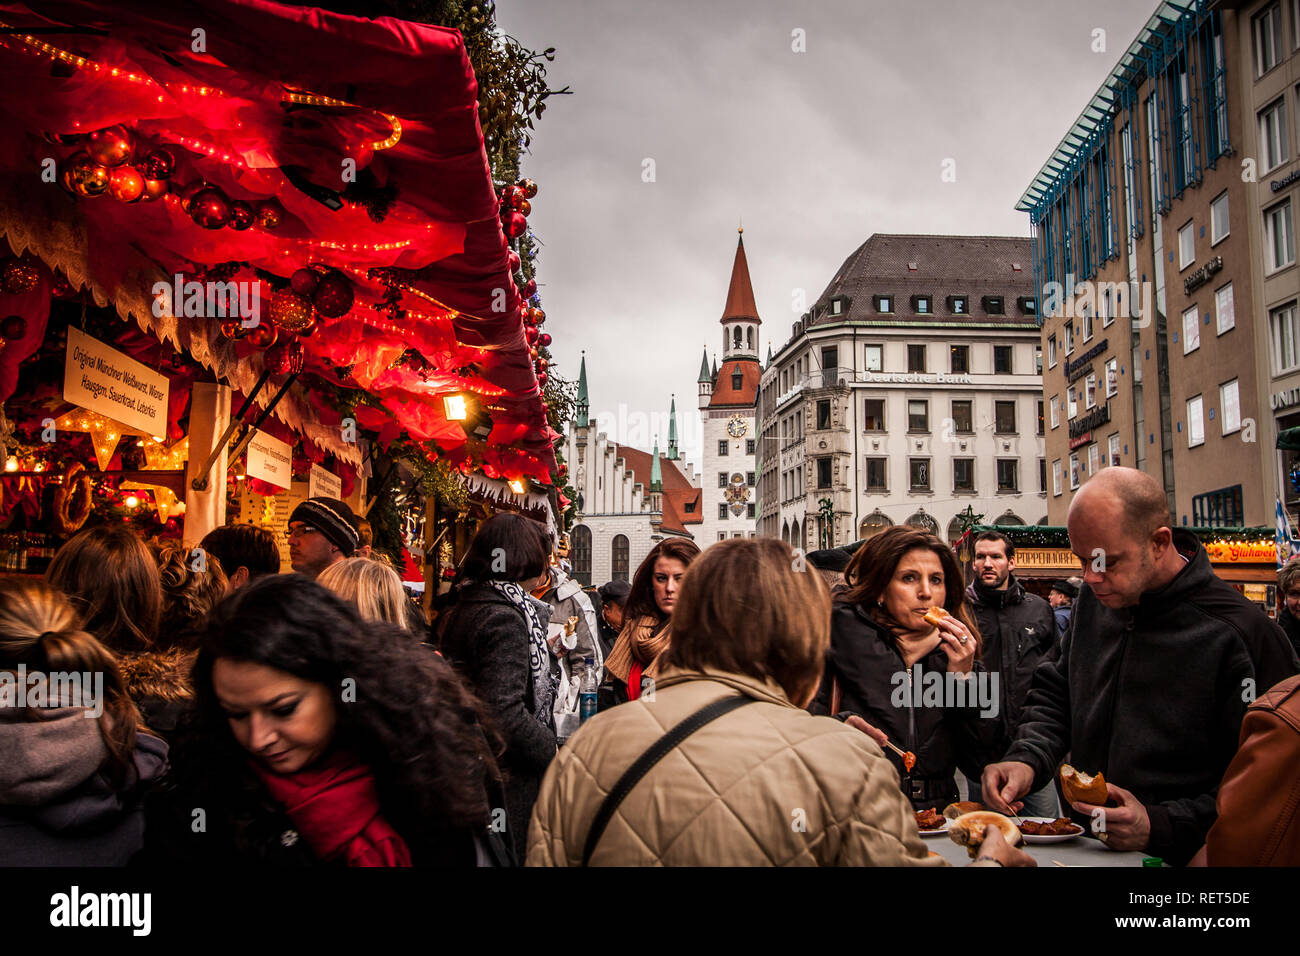 Marché de Noël sur la Marienplatz à Munich, Allemagne Banque D'Images